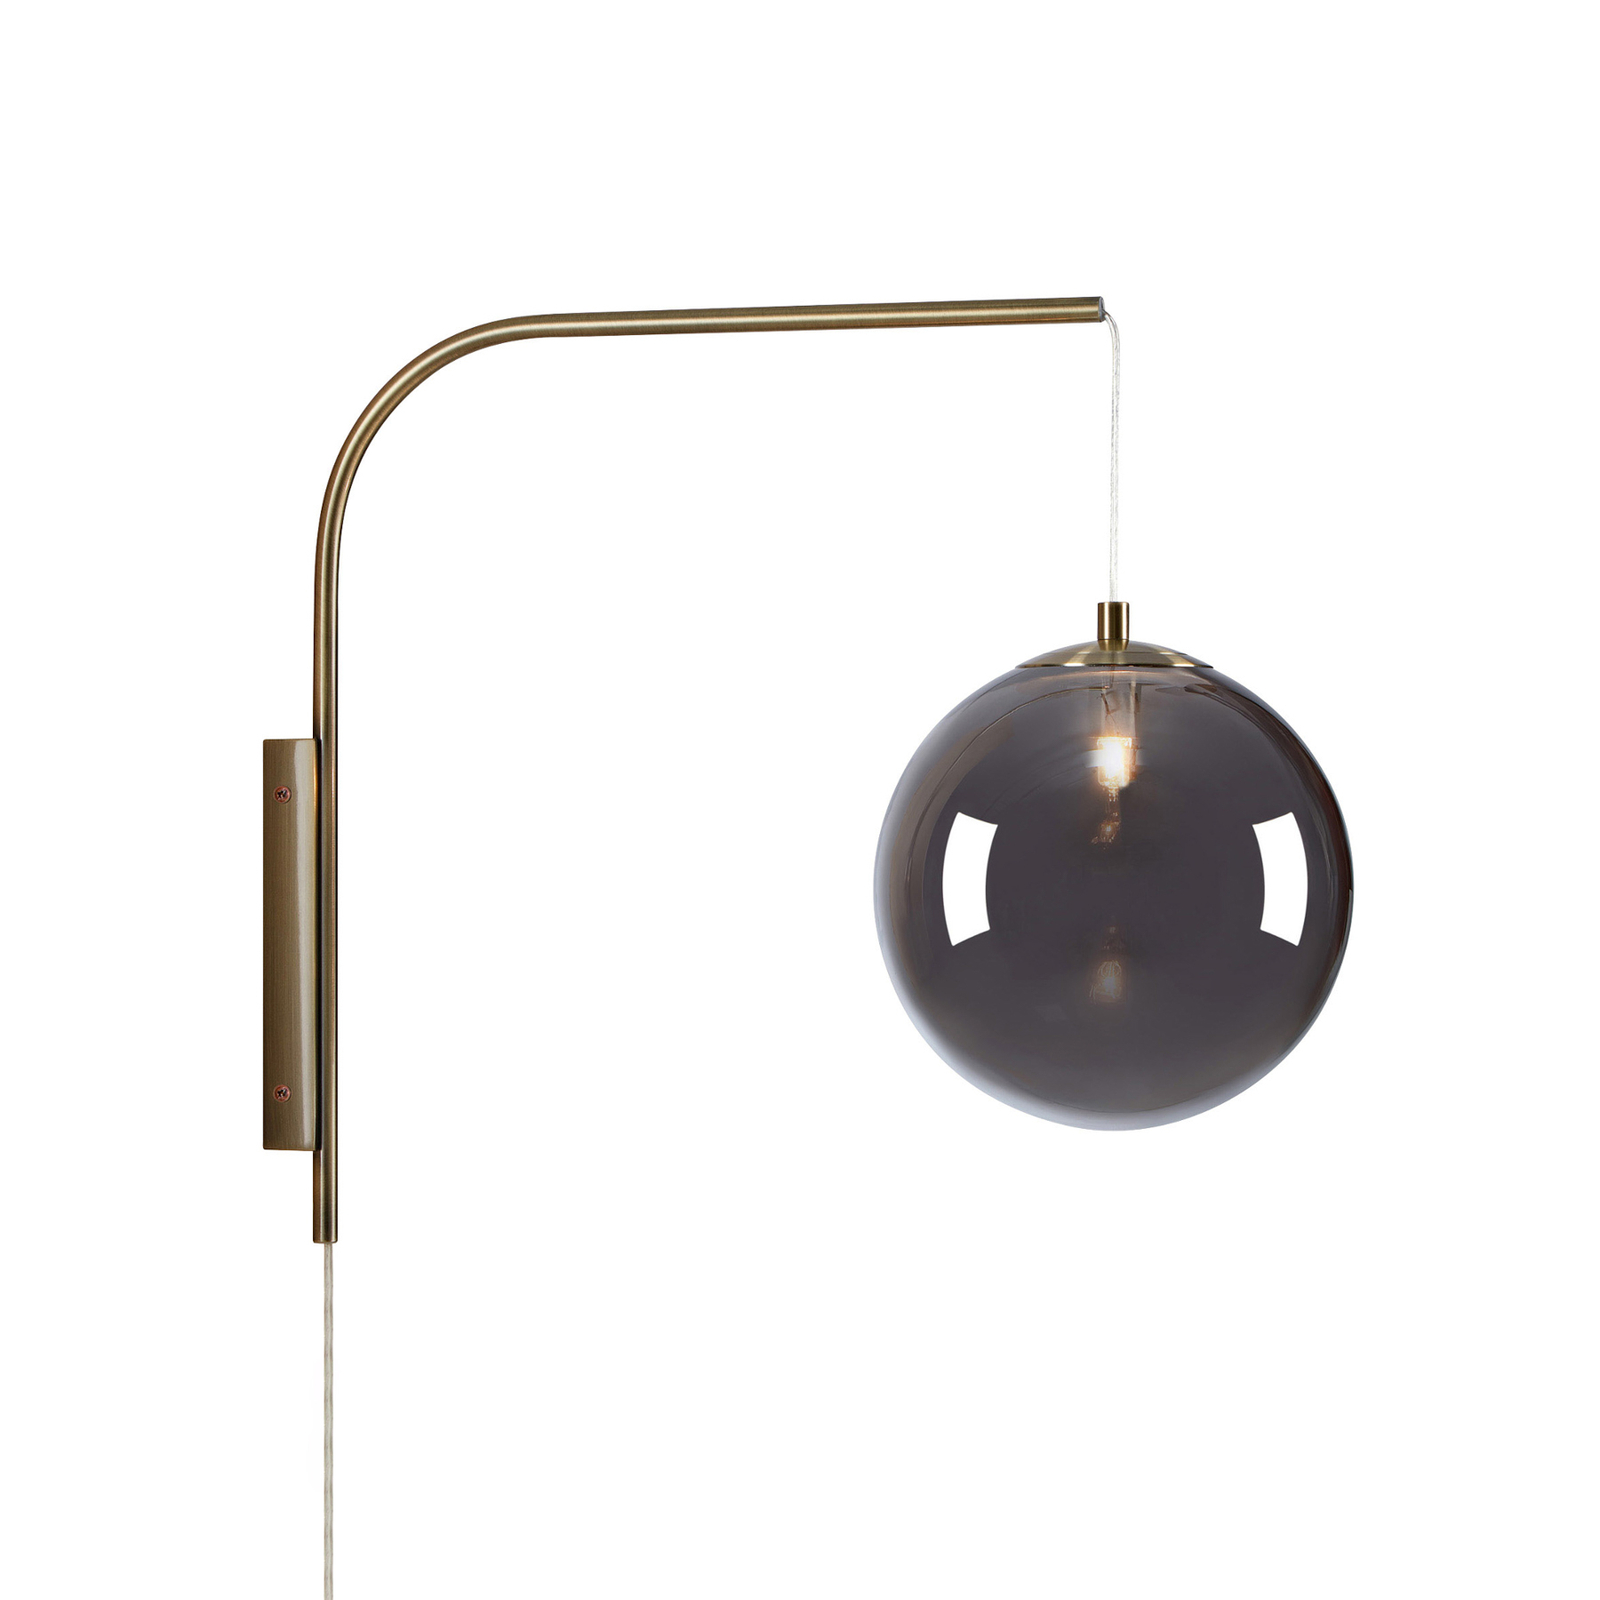 Dione wall light with a plug, brass/smoky grey